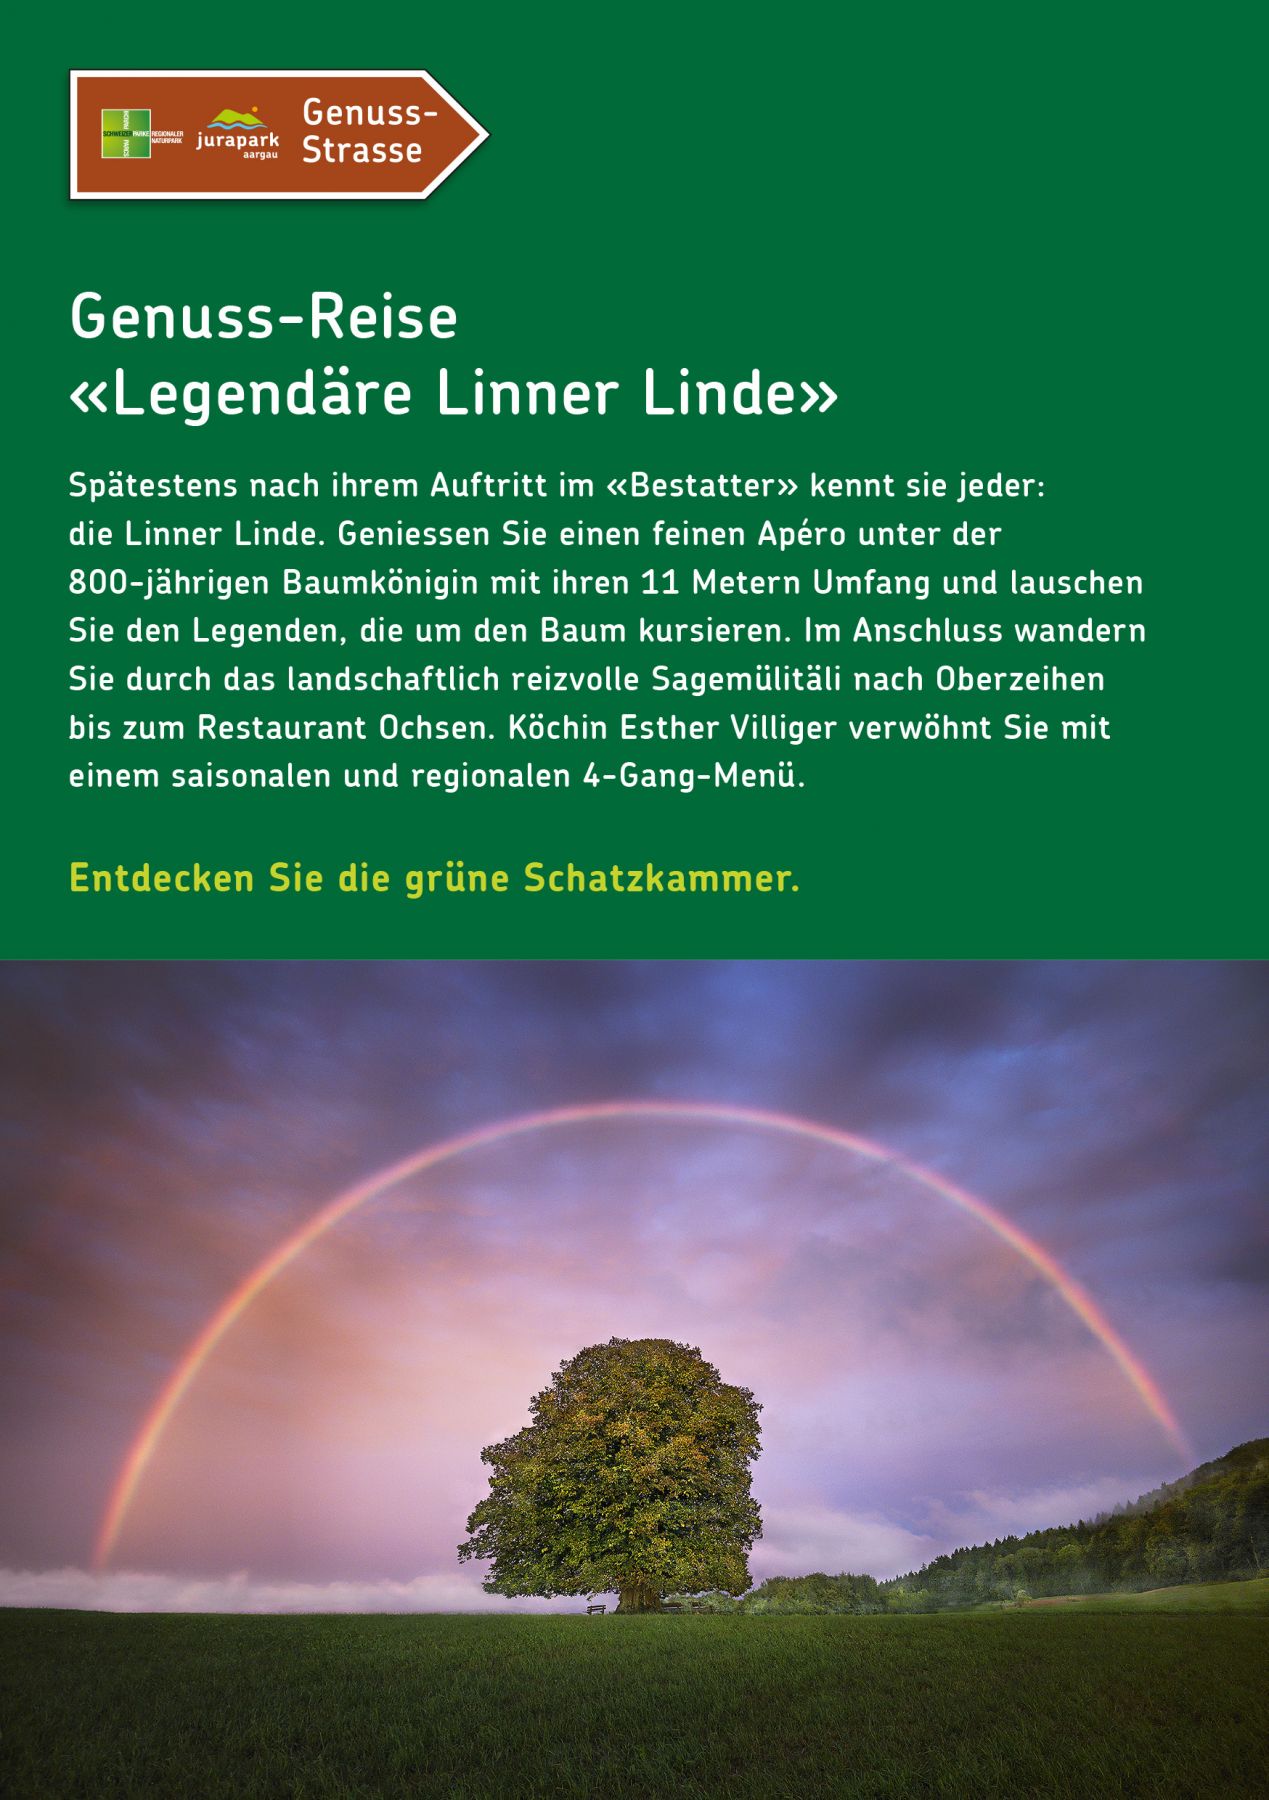 Genuss-Reise: Legendäre Linner Linde 